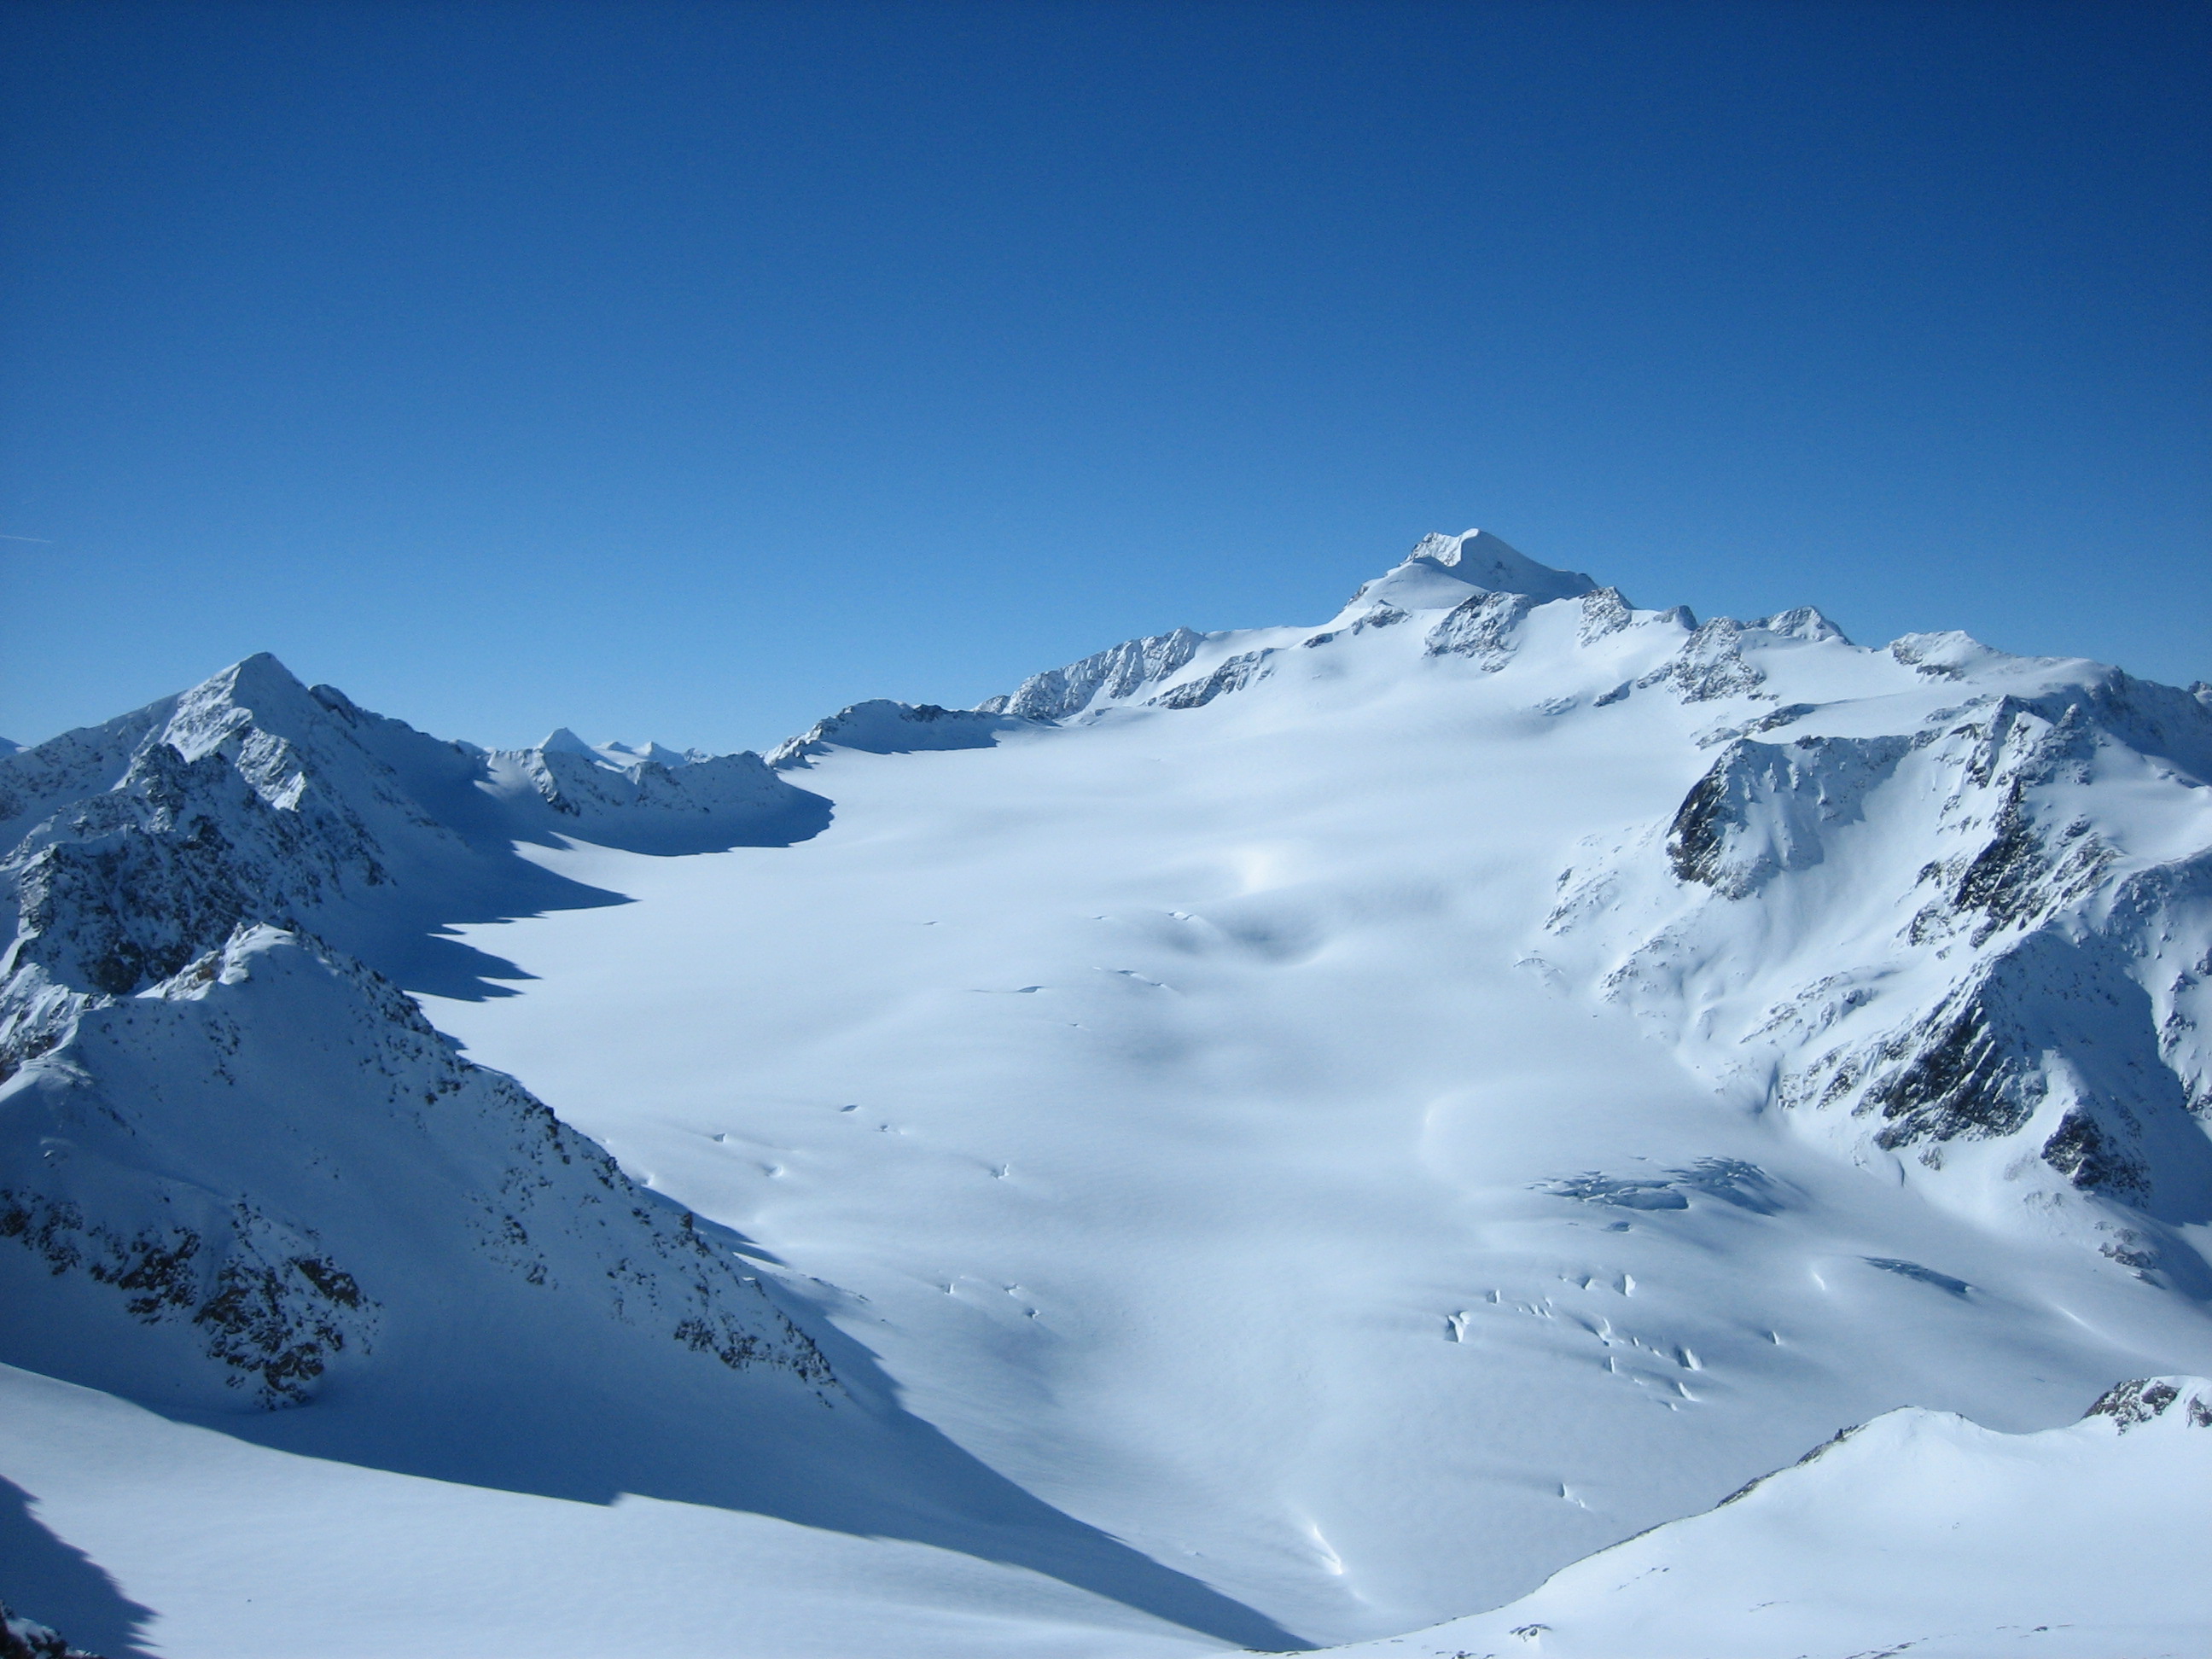 Vidspitze (3,768 m)